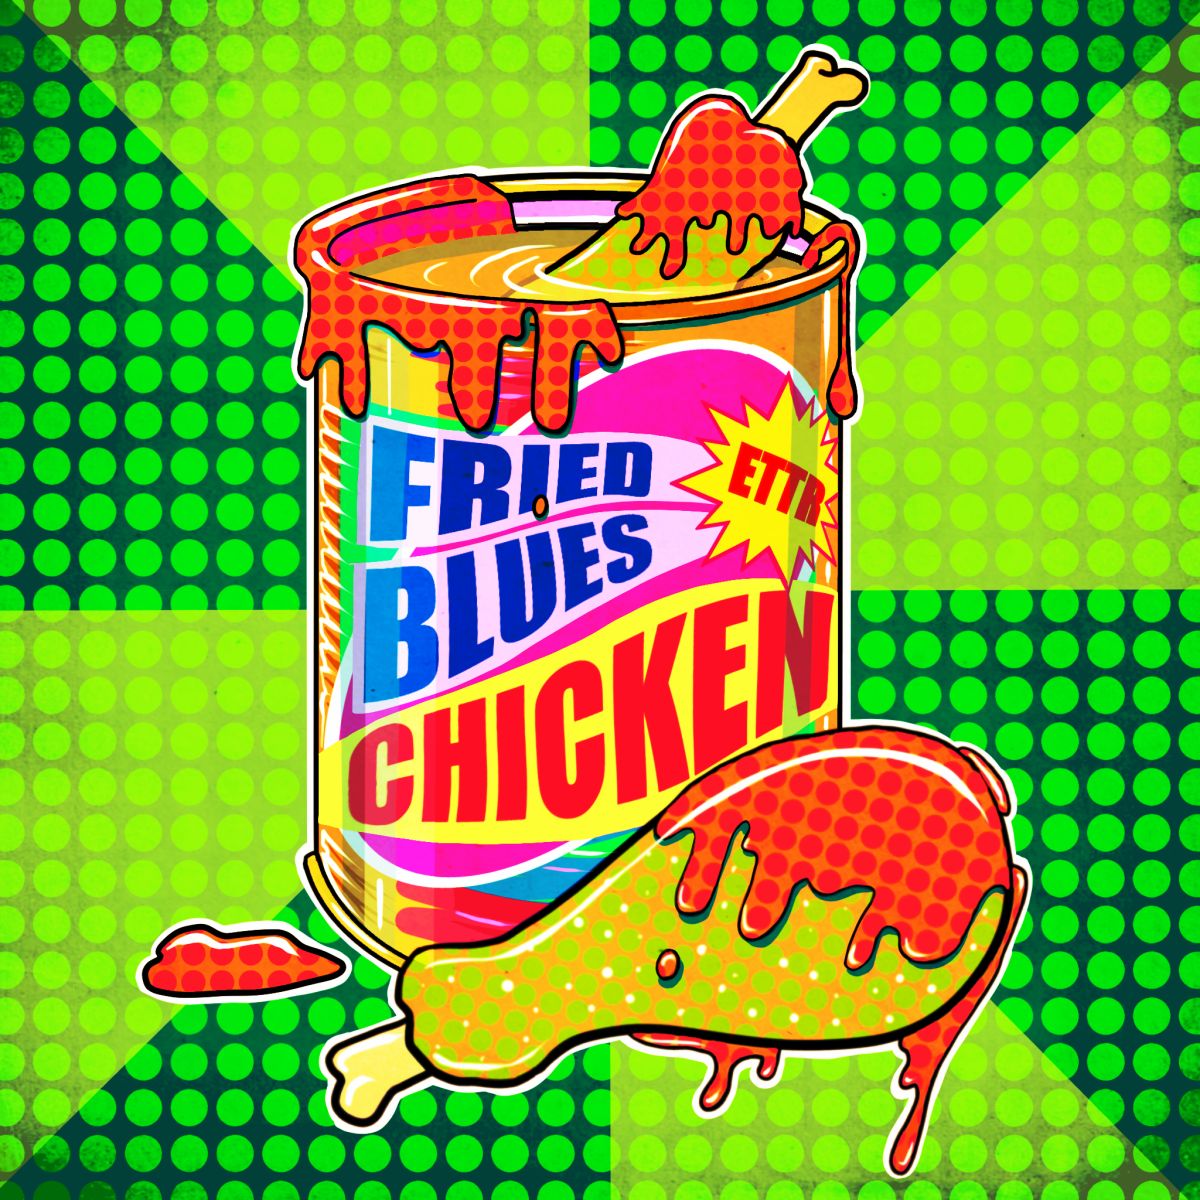 Uscito il nuovo video degli Escape To The Roof: “Fried Blues Chicken”, tra musica, polli e critica sociale